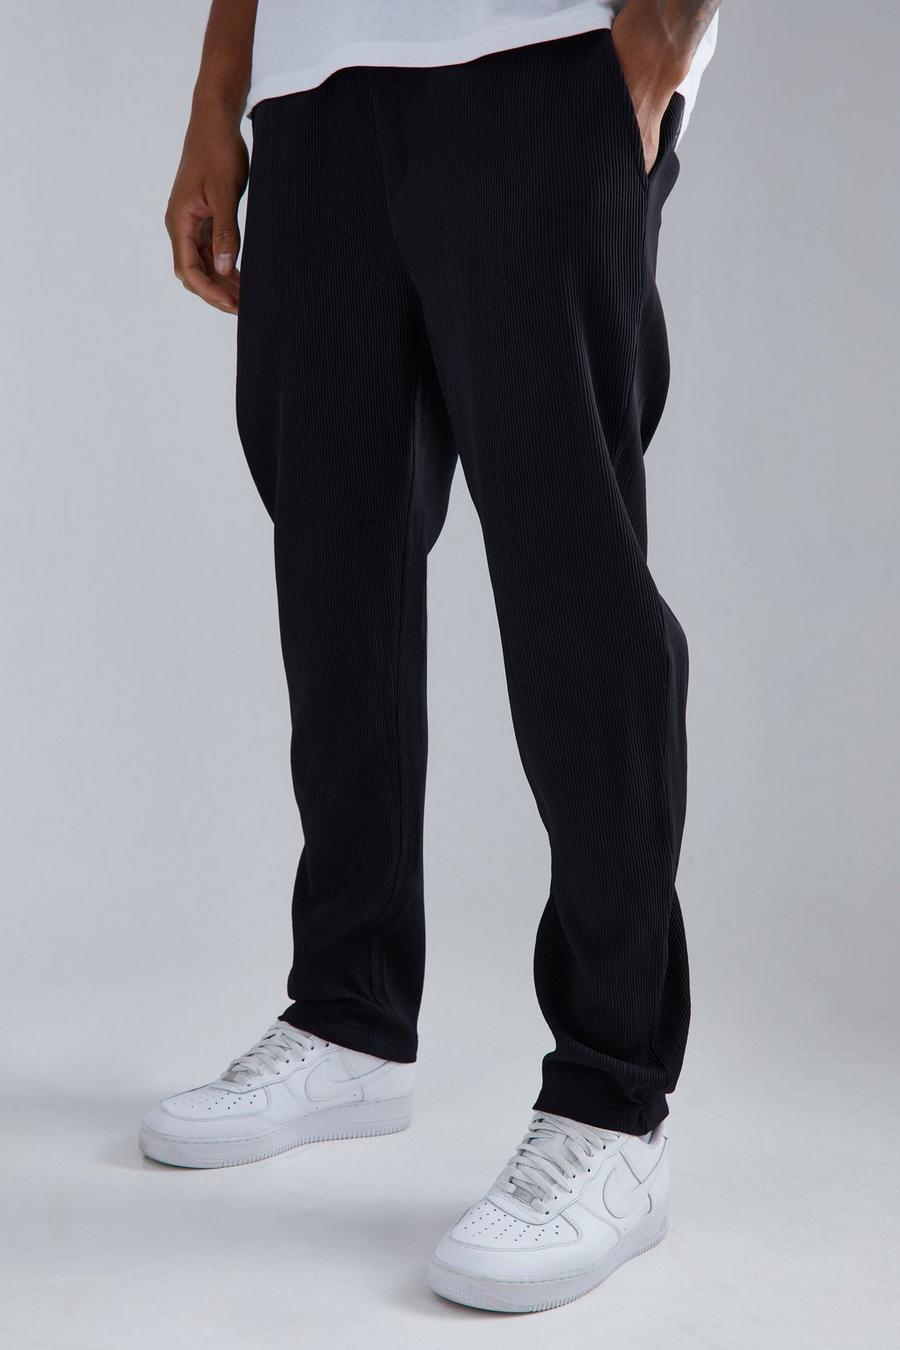 Pantalón Tall plisado ajustado con cintura elástica, Black